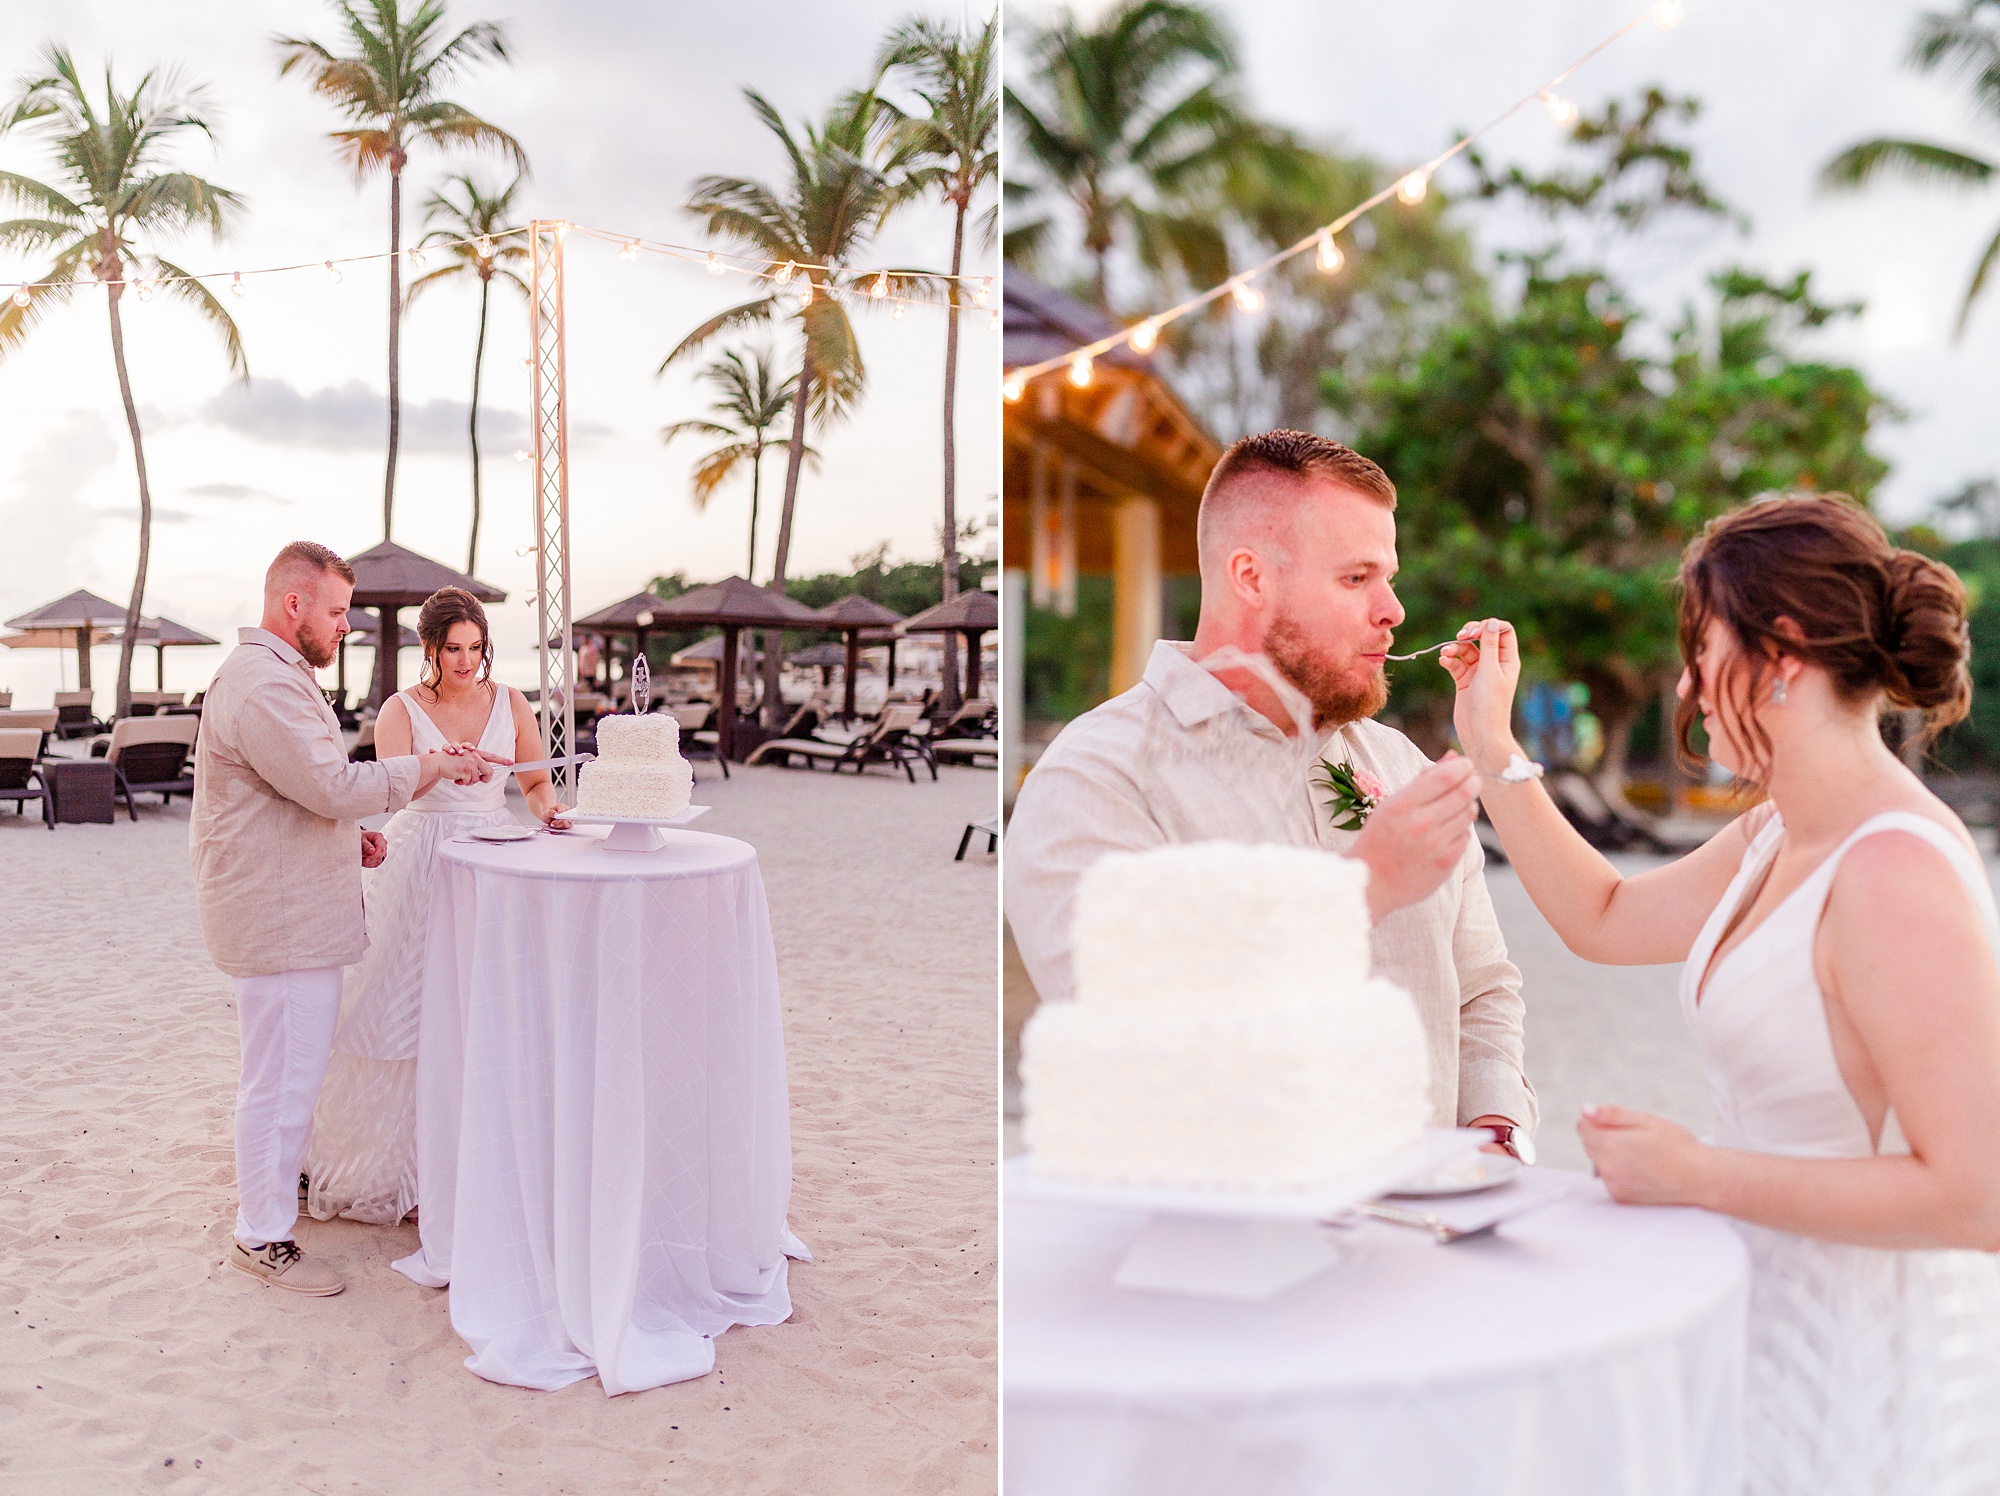 bride and groom cut wedding cake during beach wedding reception